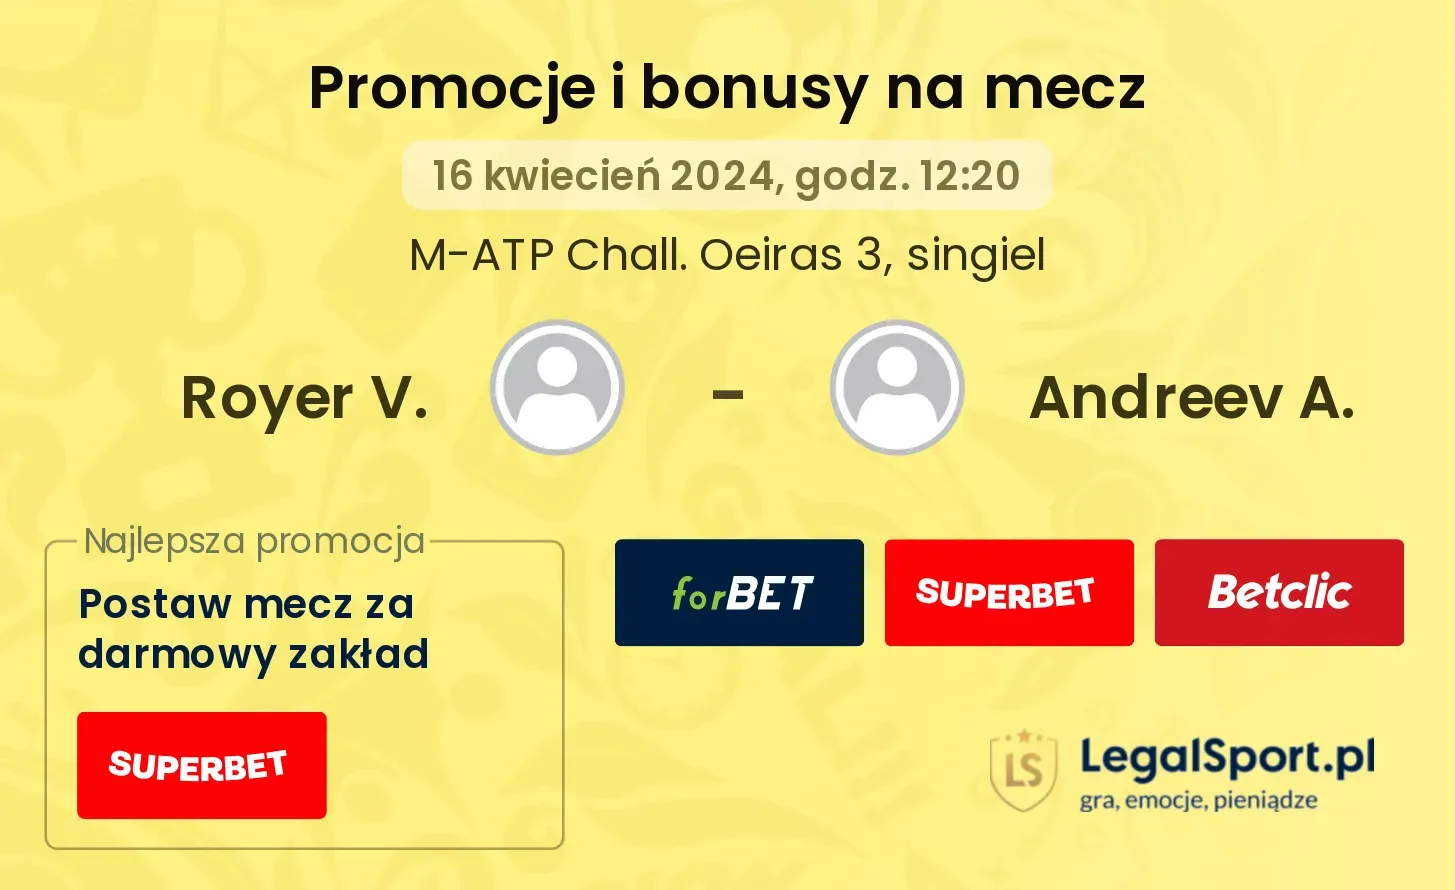 Royer V. - Andreev A. promocje bonusy na mecz